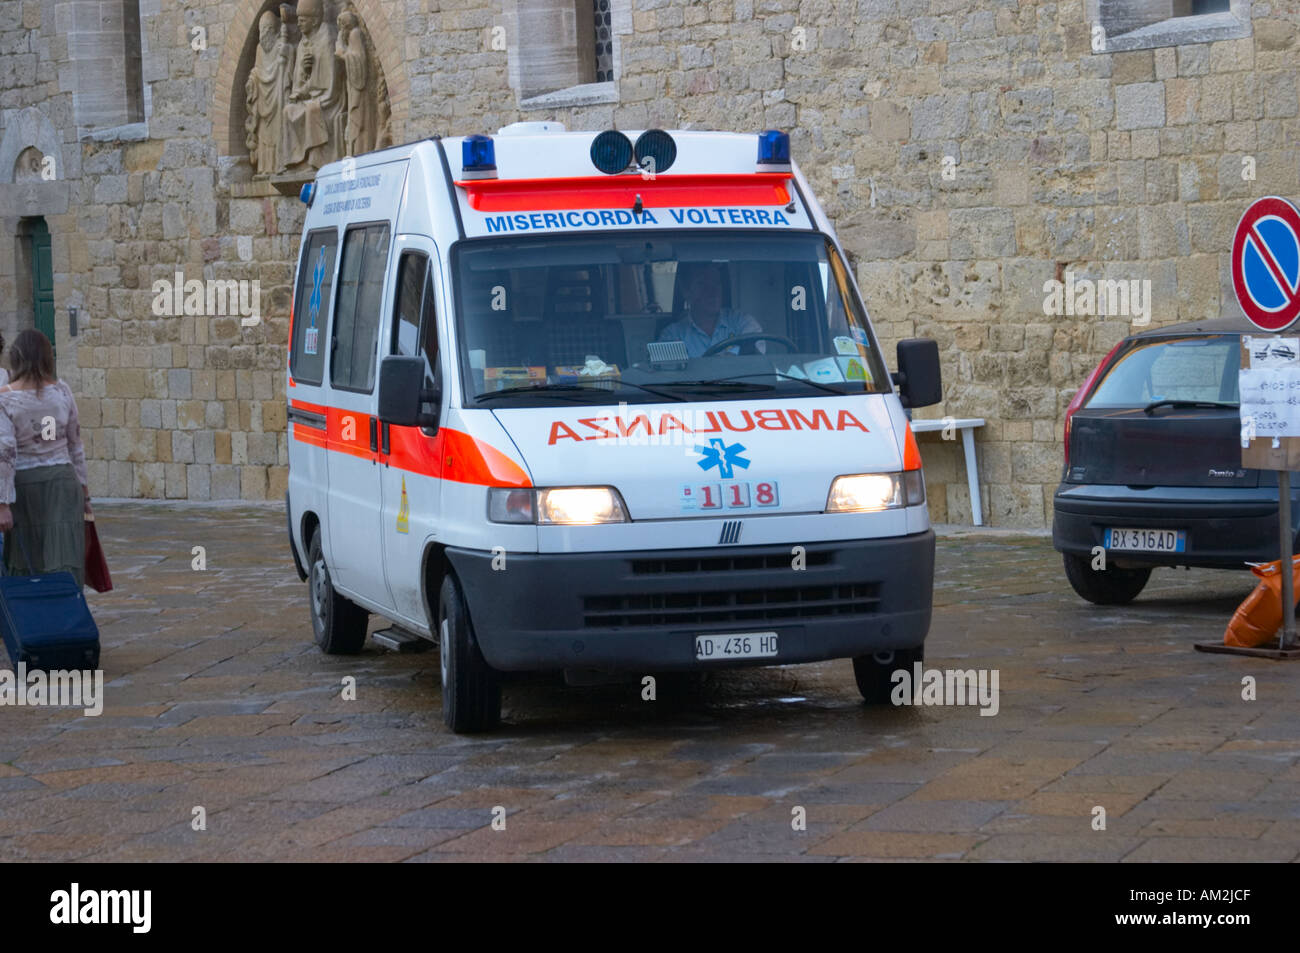 Ambulance in Volterra Tuscany Italy Stock Photo